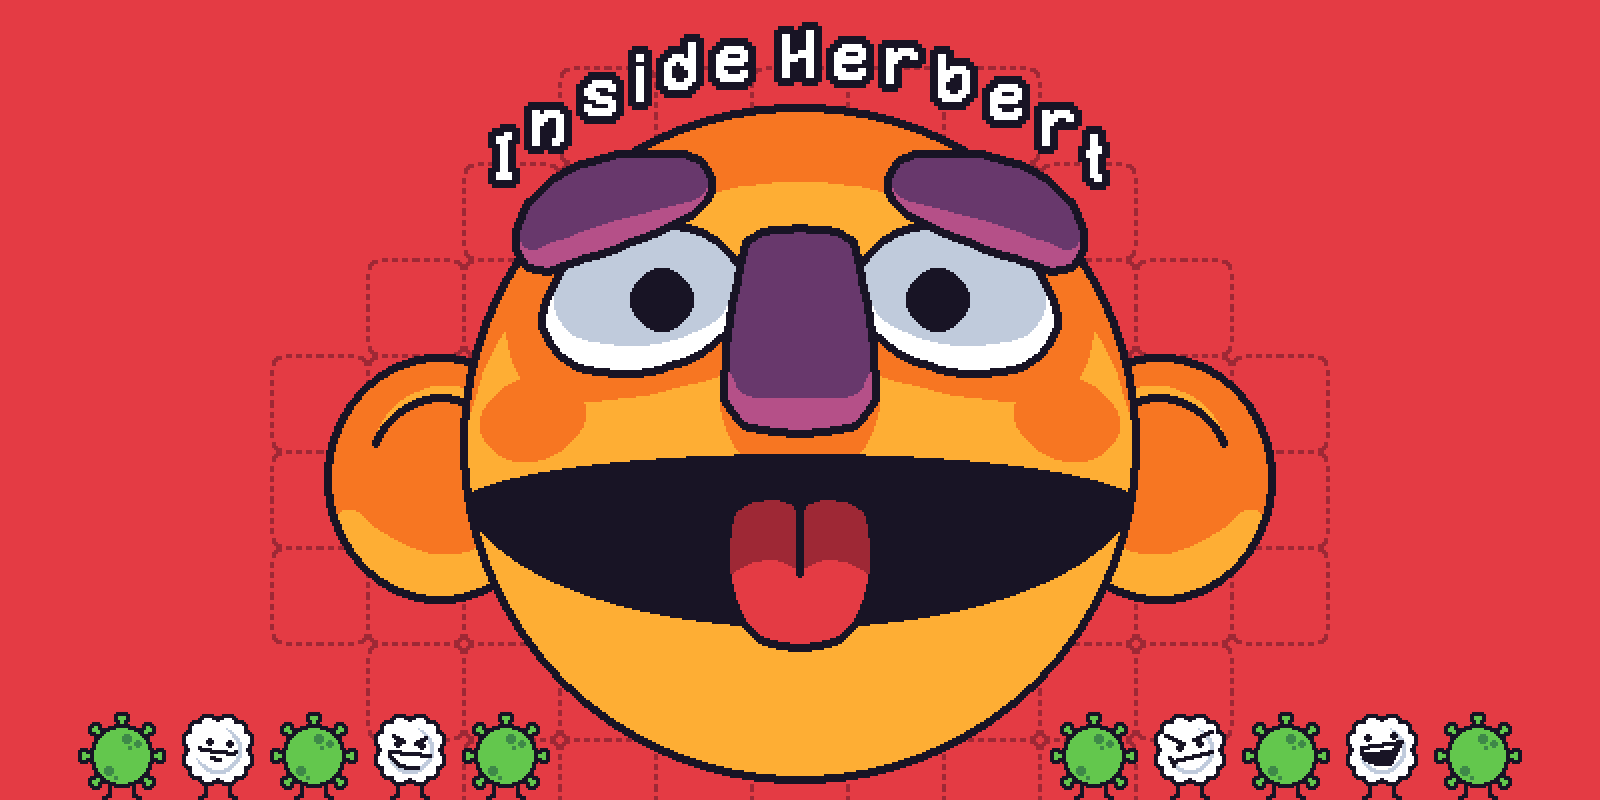 Inside Herbert